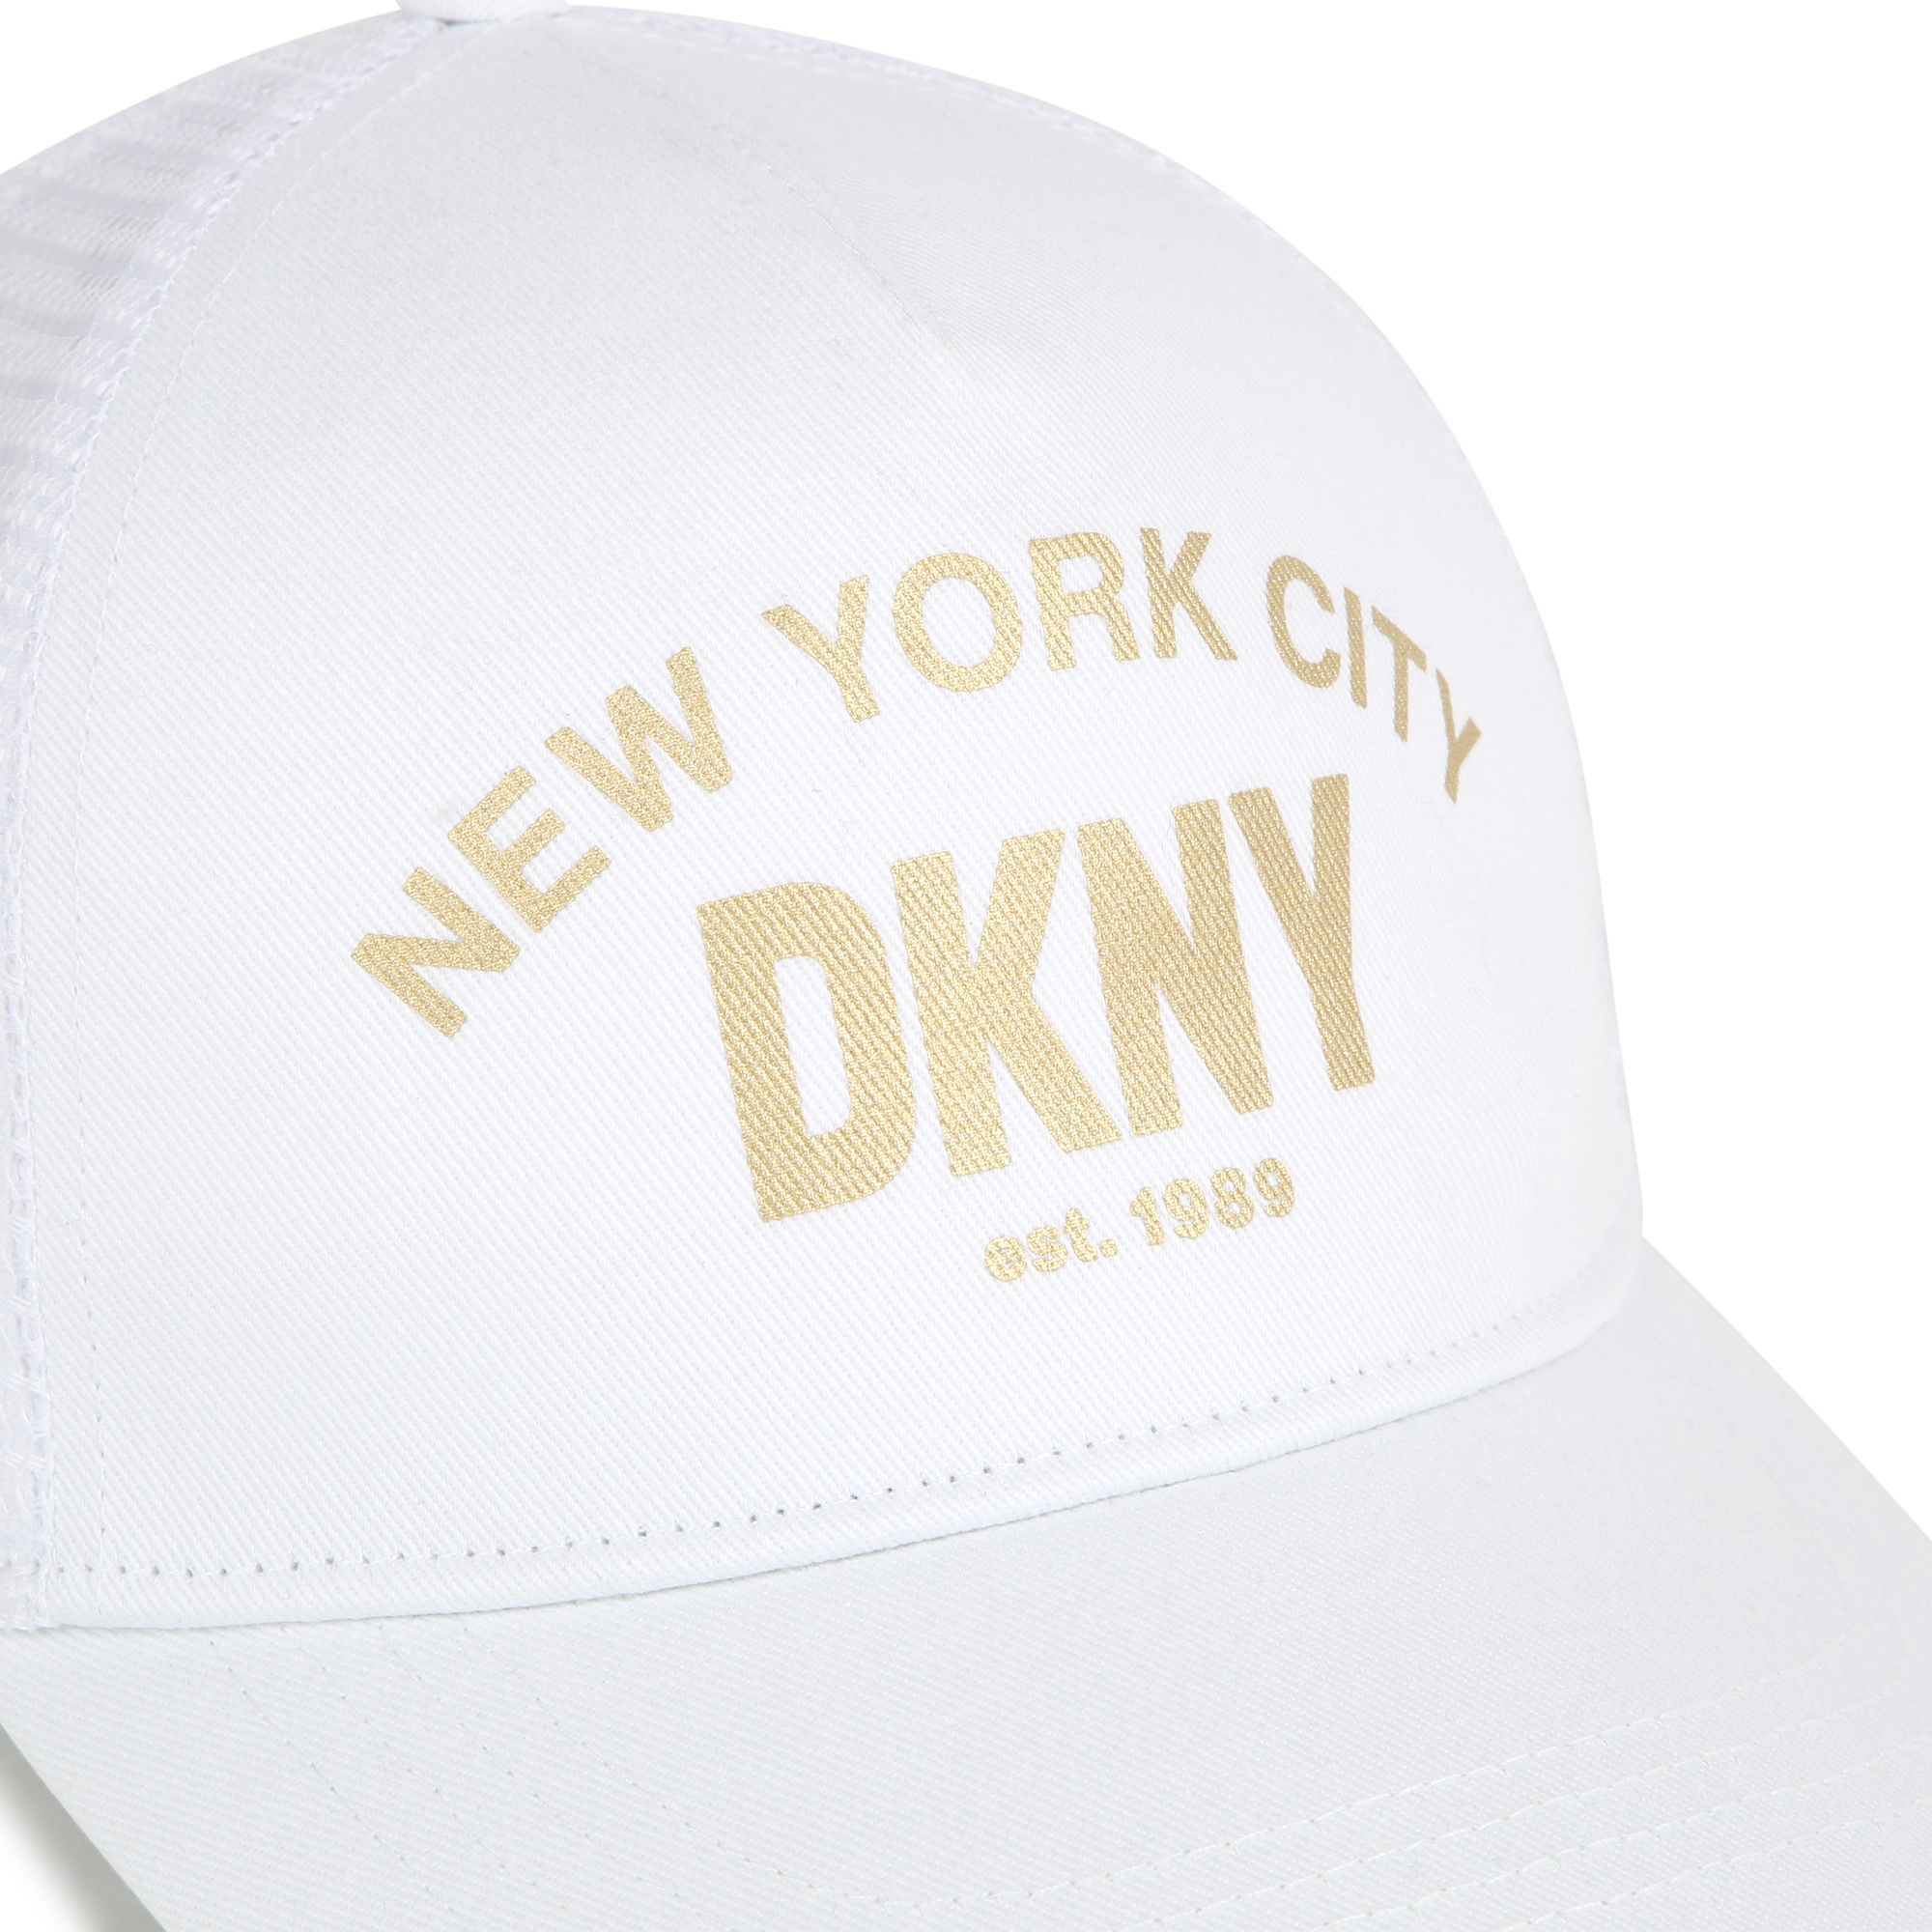 Kappe mit Logo DKNY Für MÄDCHEN